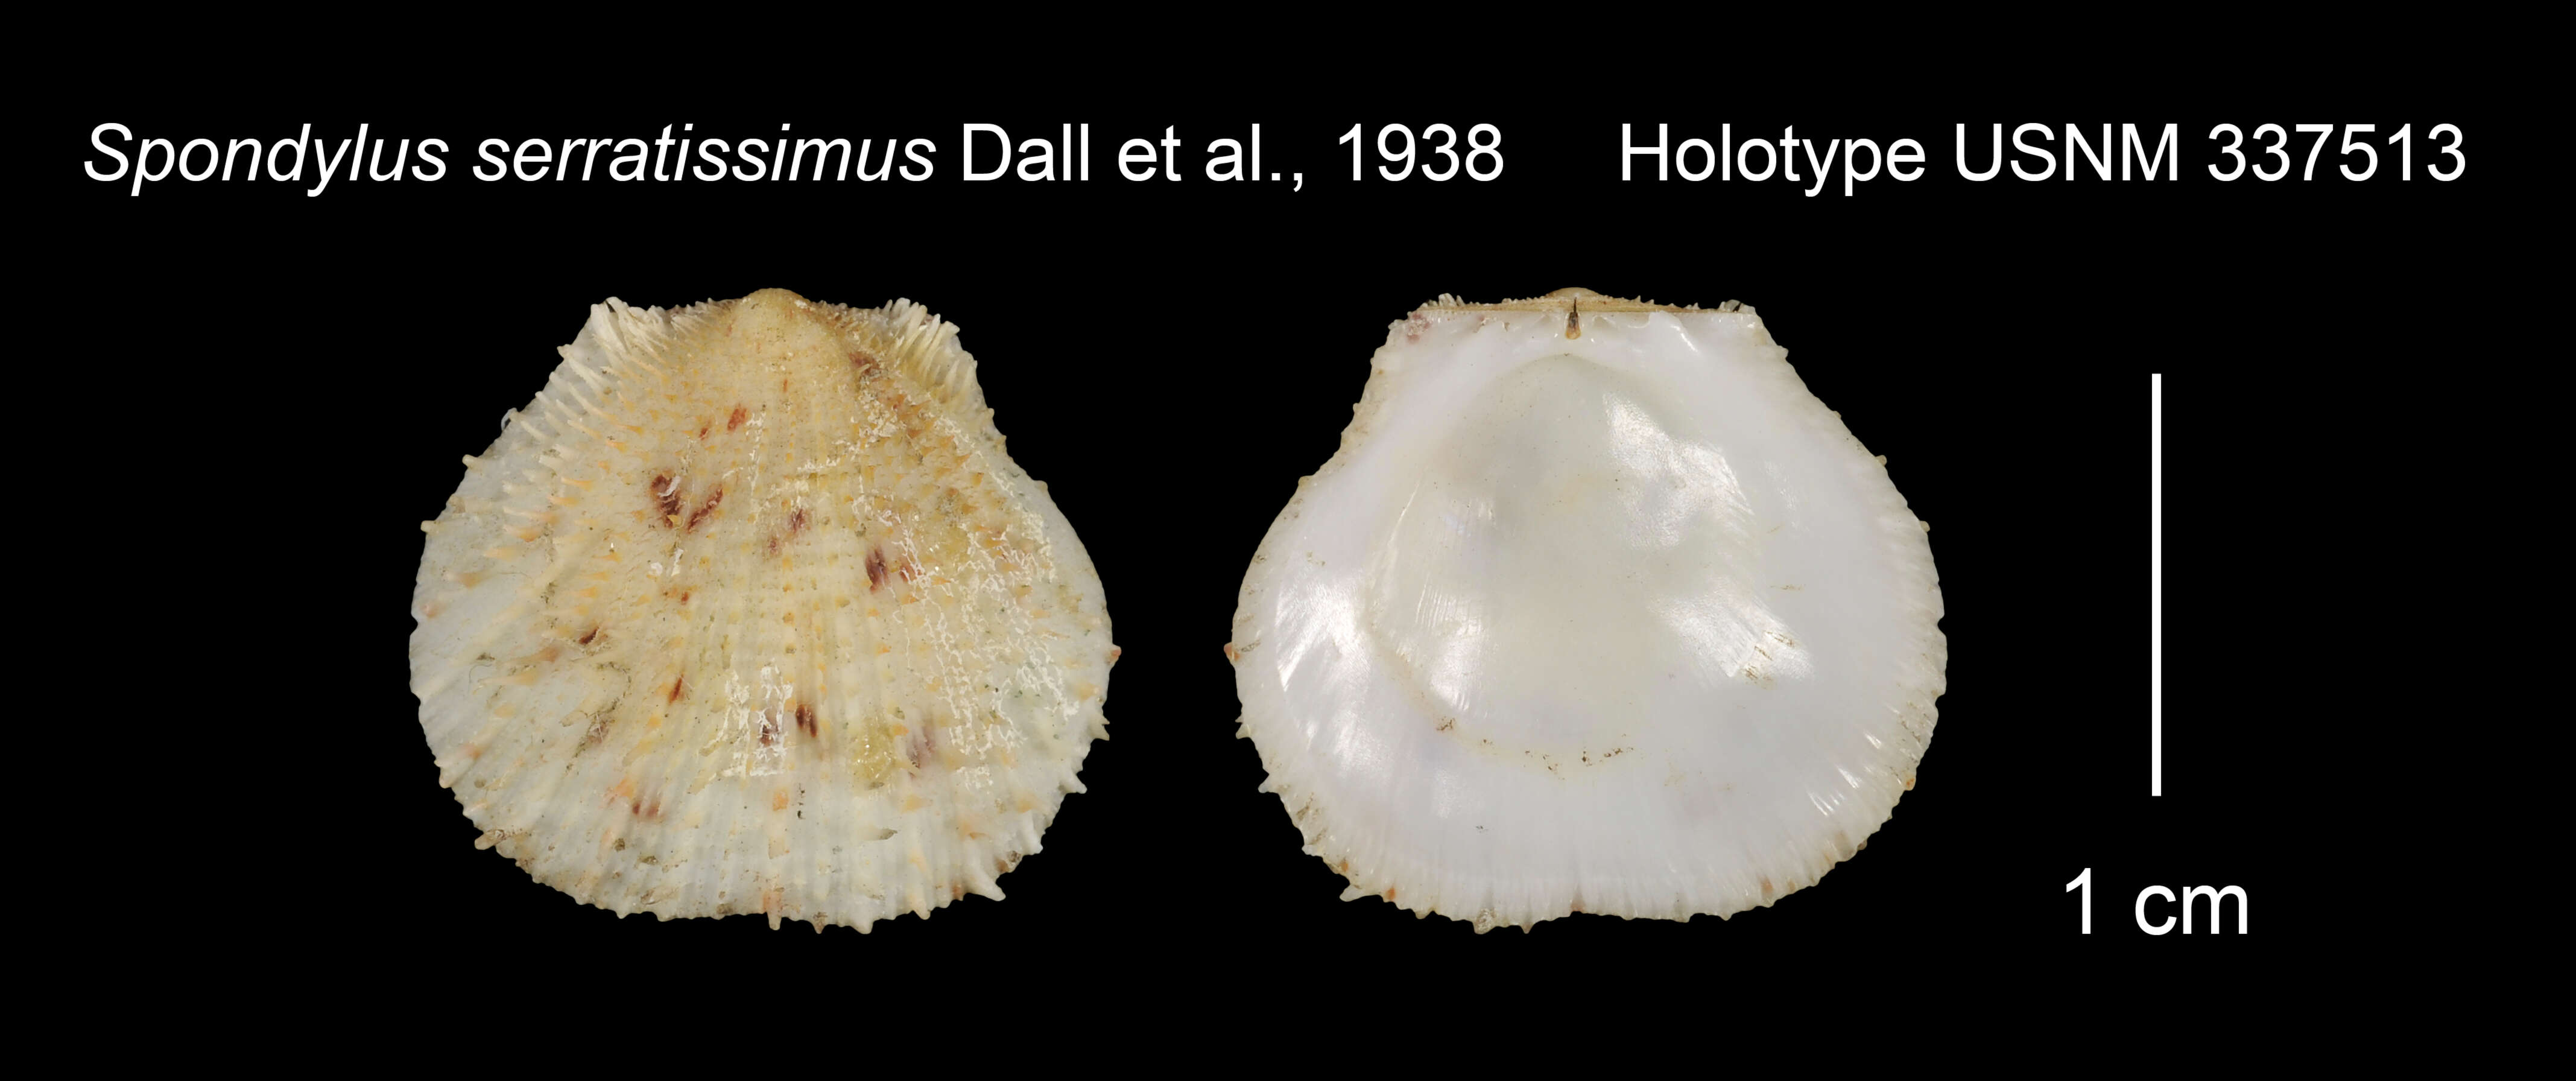 Image of Spondylus serratissimus Dall, Bartsch & Rehder 1938